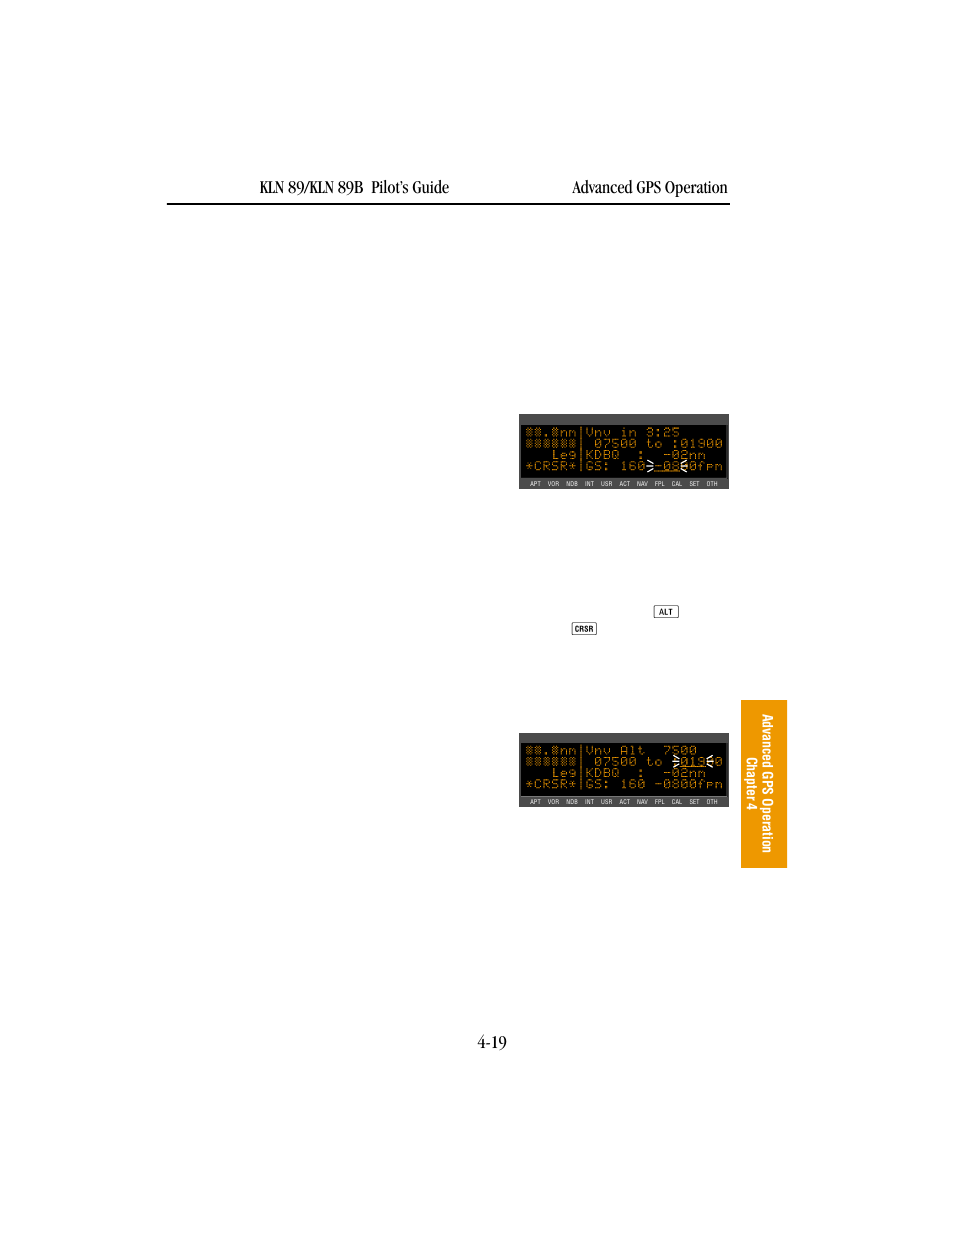 BendixKing KLN 89B - Pilots Guide User Manual | Page 130 / 246